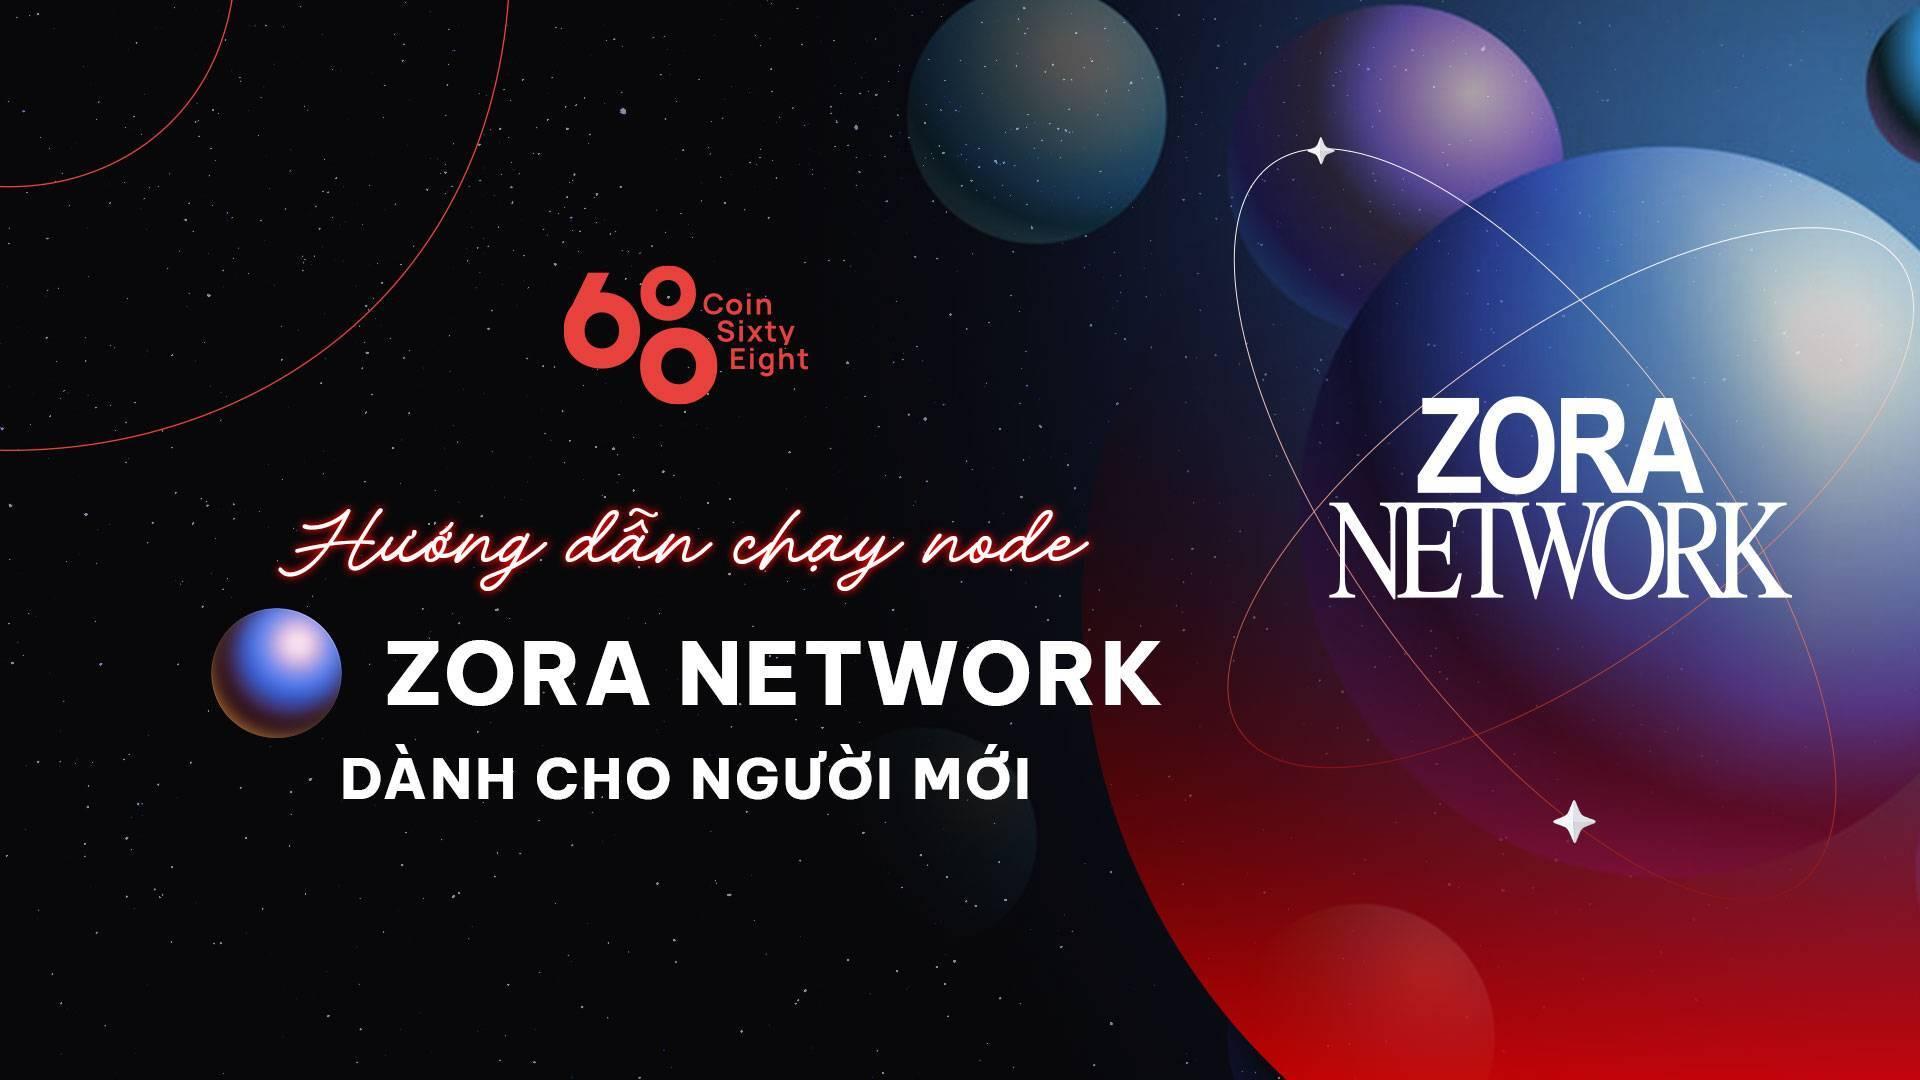 huong-dan-chay-node-zora-network-danh-cho-nguoi-moi